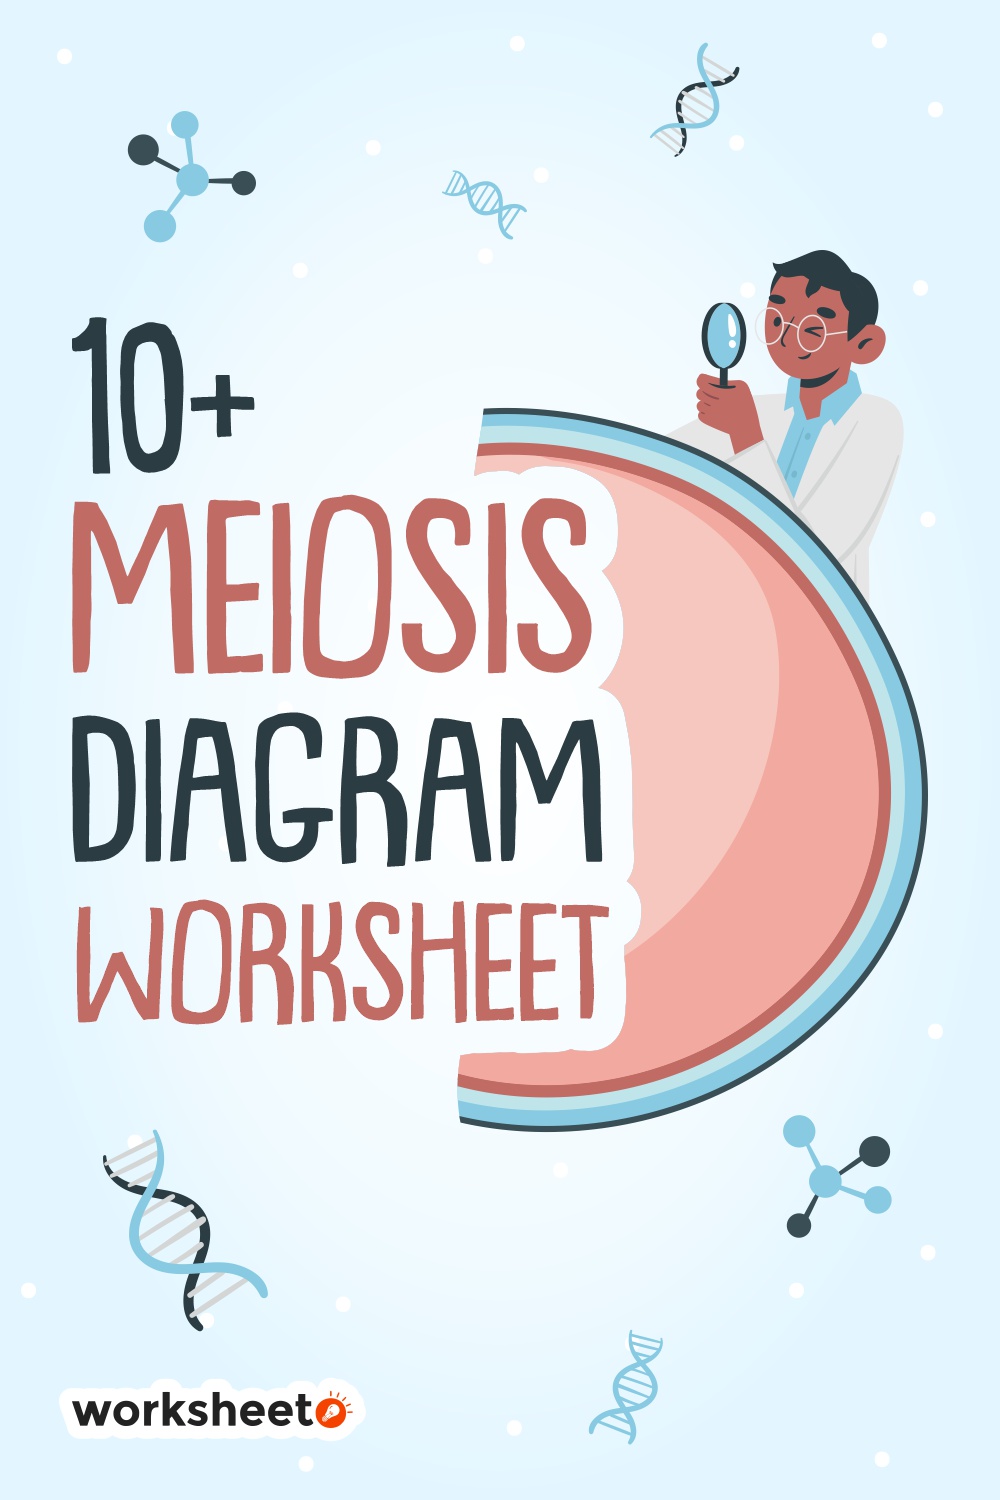 16 Images of Meiosis Diagram Worksheet